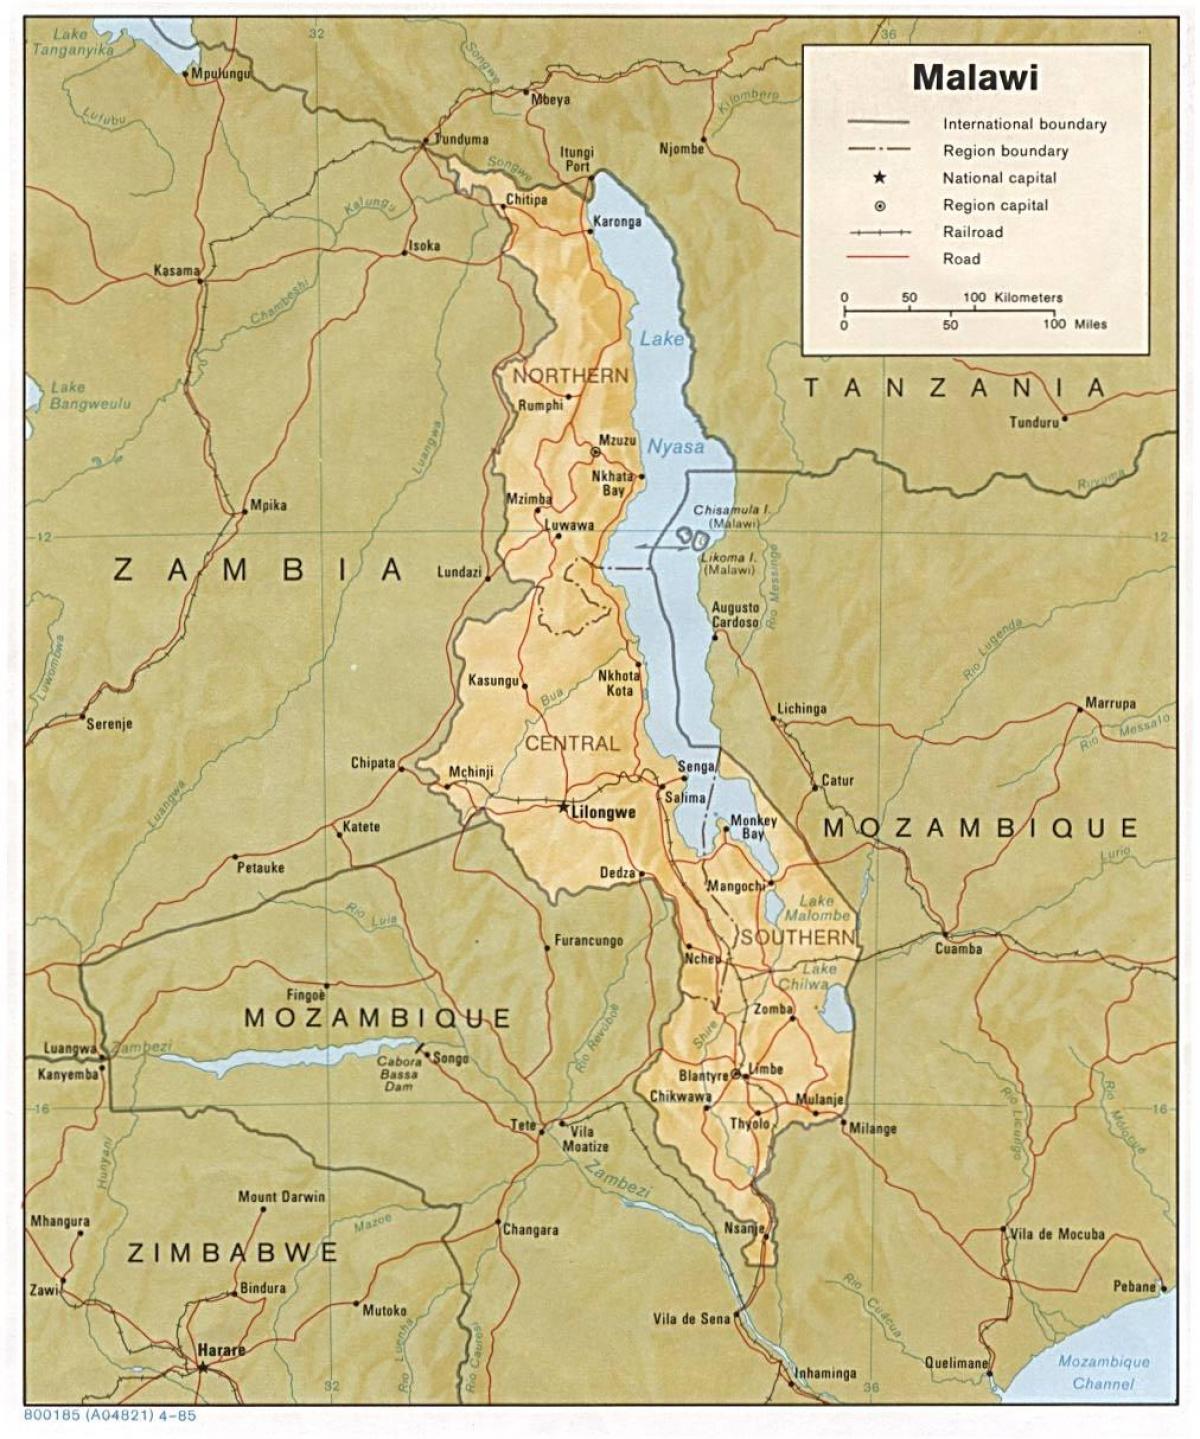 lake Malawi på kort